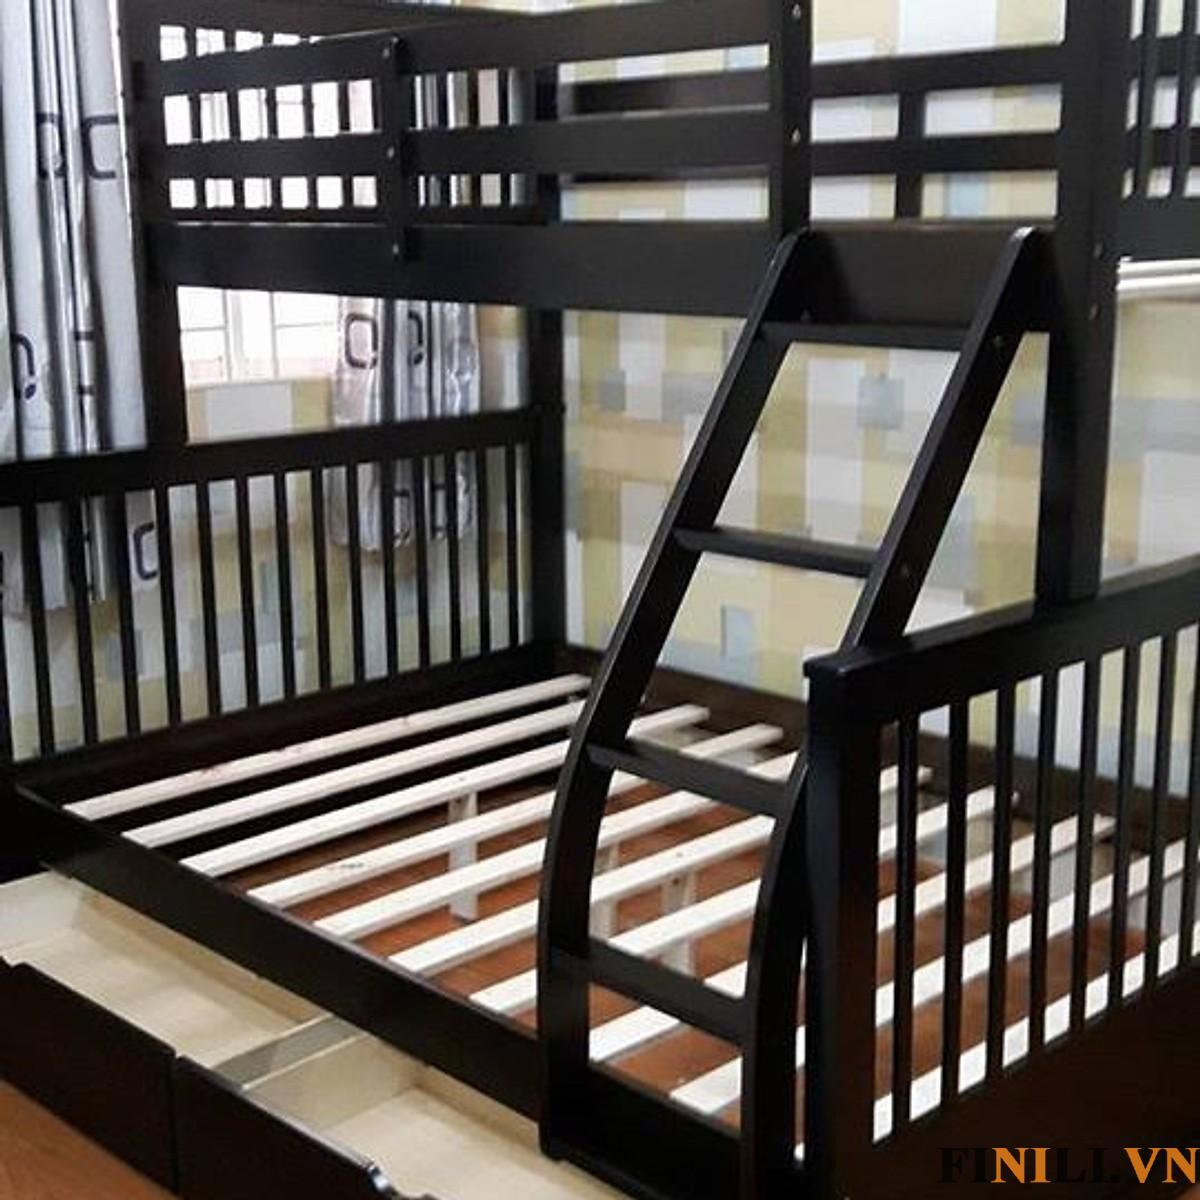 Giường tầng trẻ em FNL 02100 được thiết kế thêm các thanh an toàn xung quanh bảo vệ vệ trẻ không bị tổn thương khi say giấc